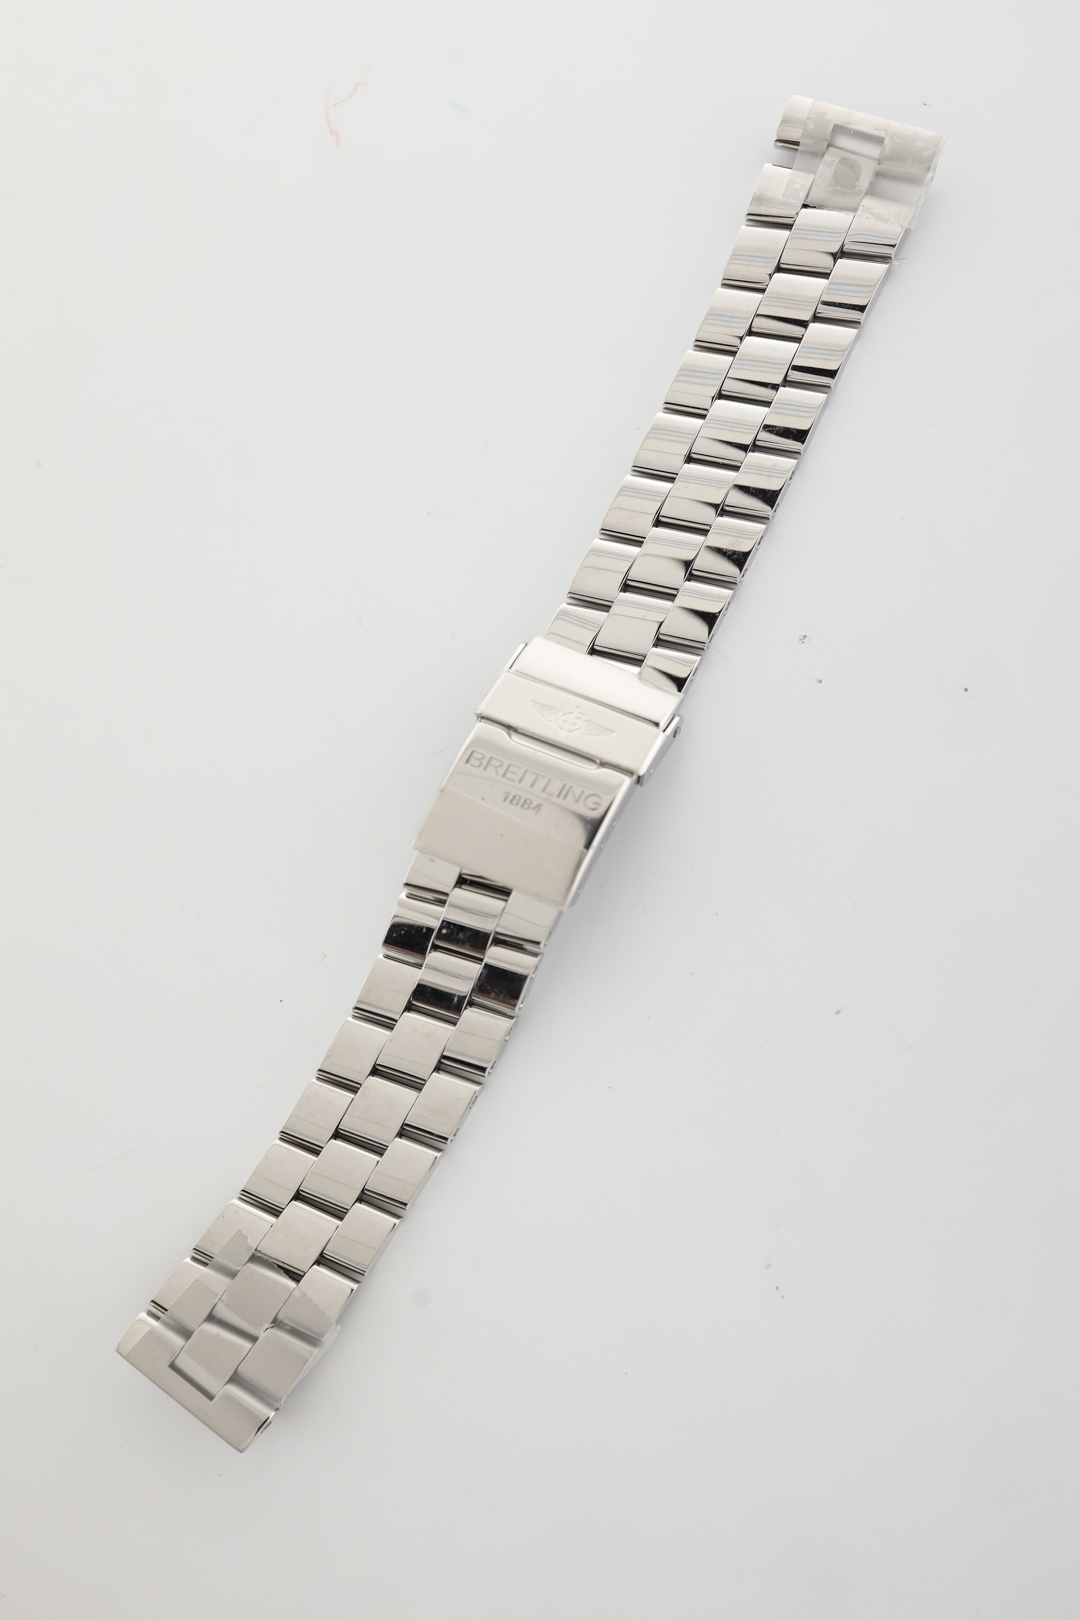 Breitling 22mm Avenger Skyland Stainless Steel Bracelet